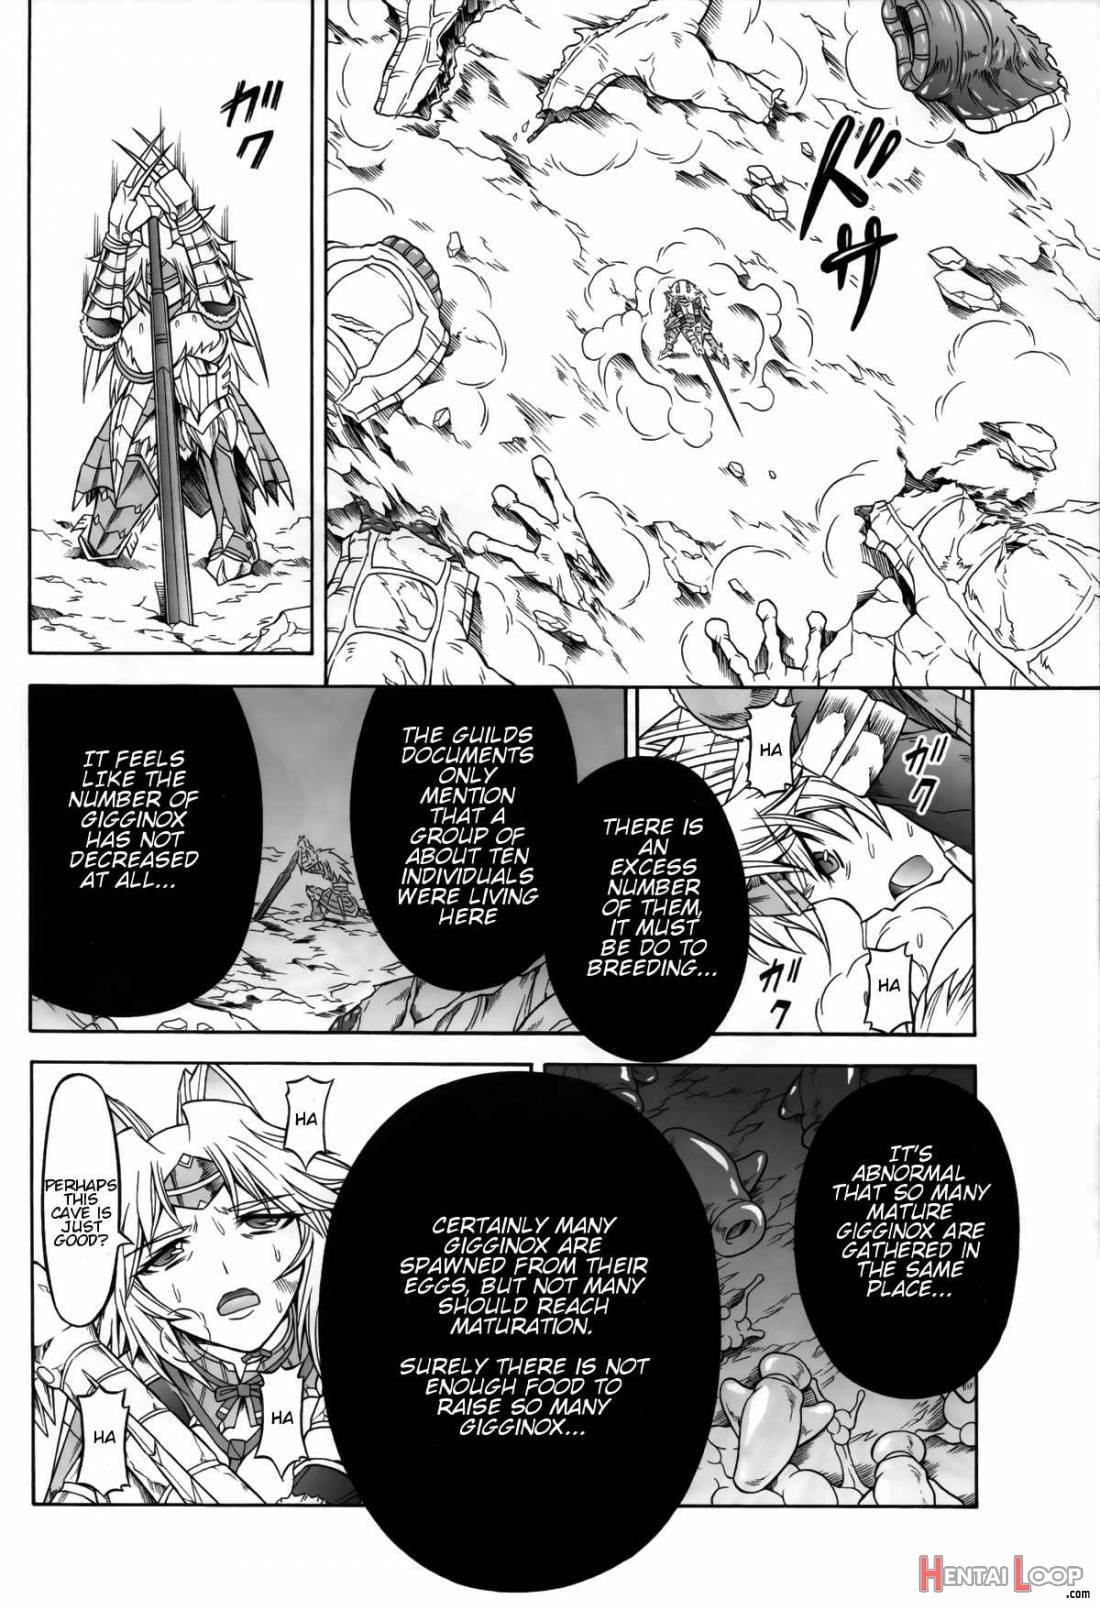 Solo Hunter No Seitai 4: The Second Part page 3